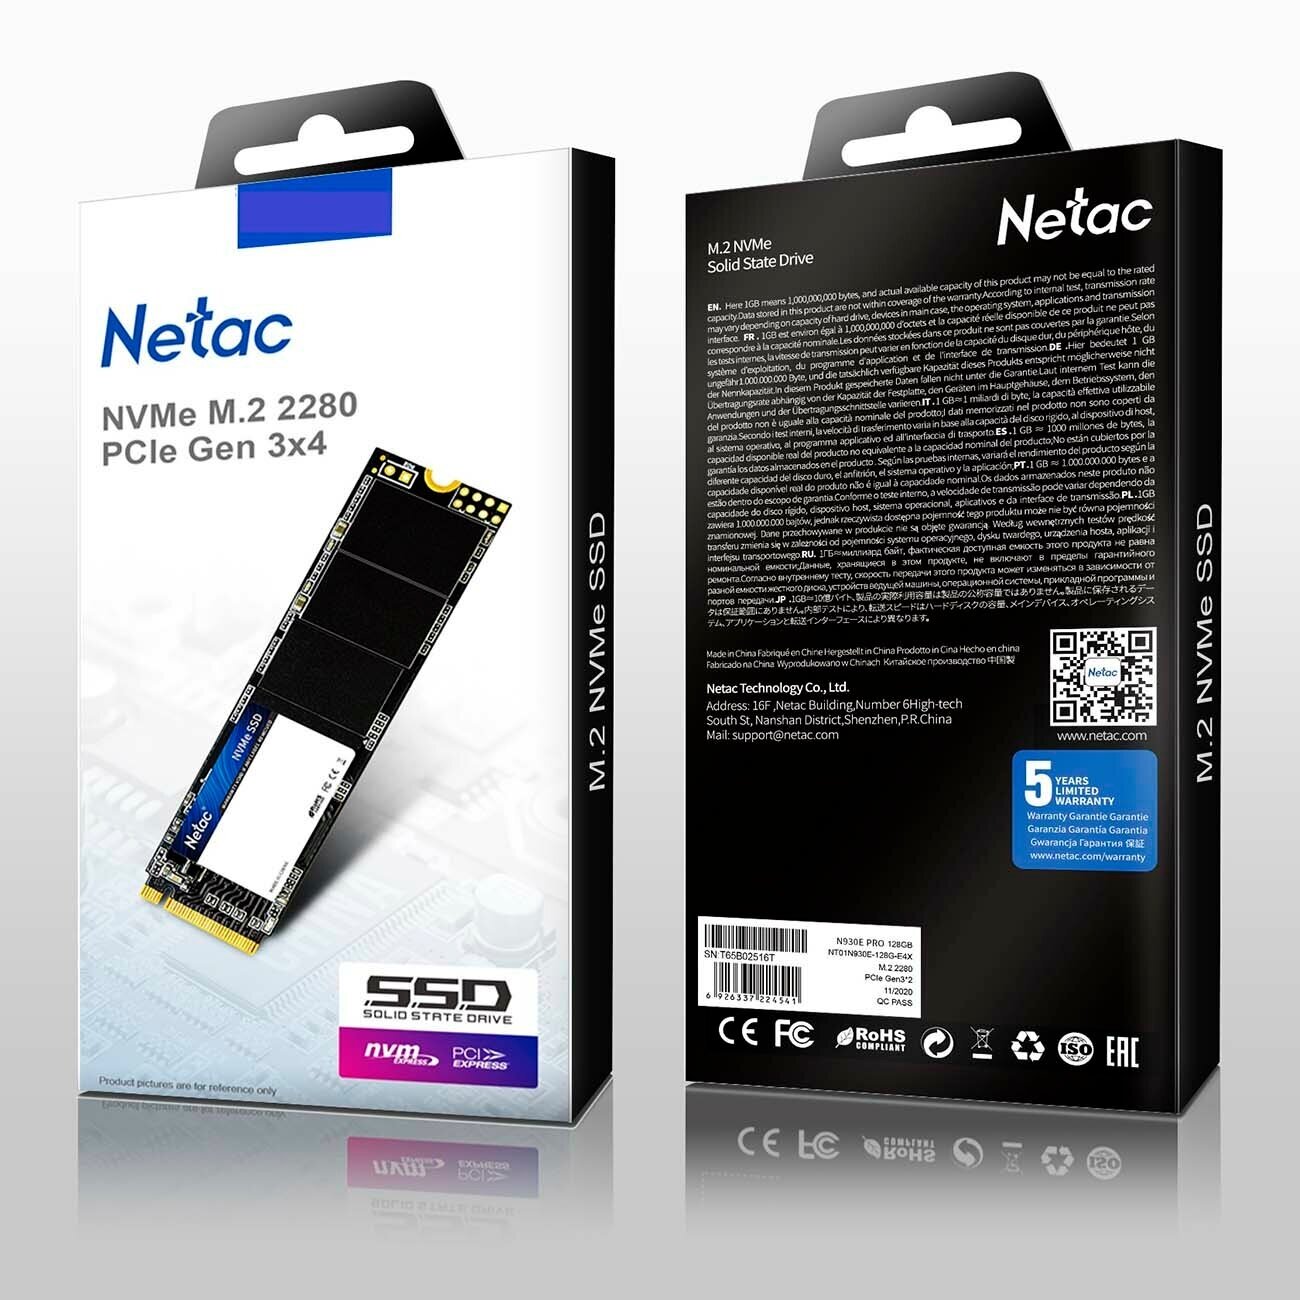 Твердотельный накопитель Netac N930E PRO 256 ГБ M2 NT01N930E-256G-E4X